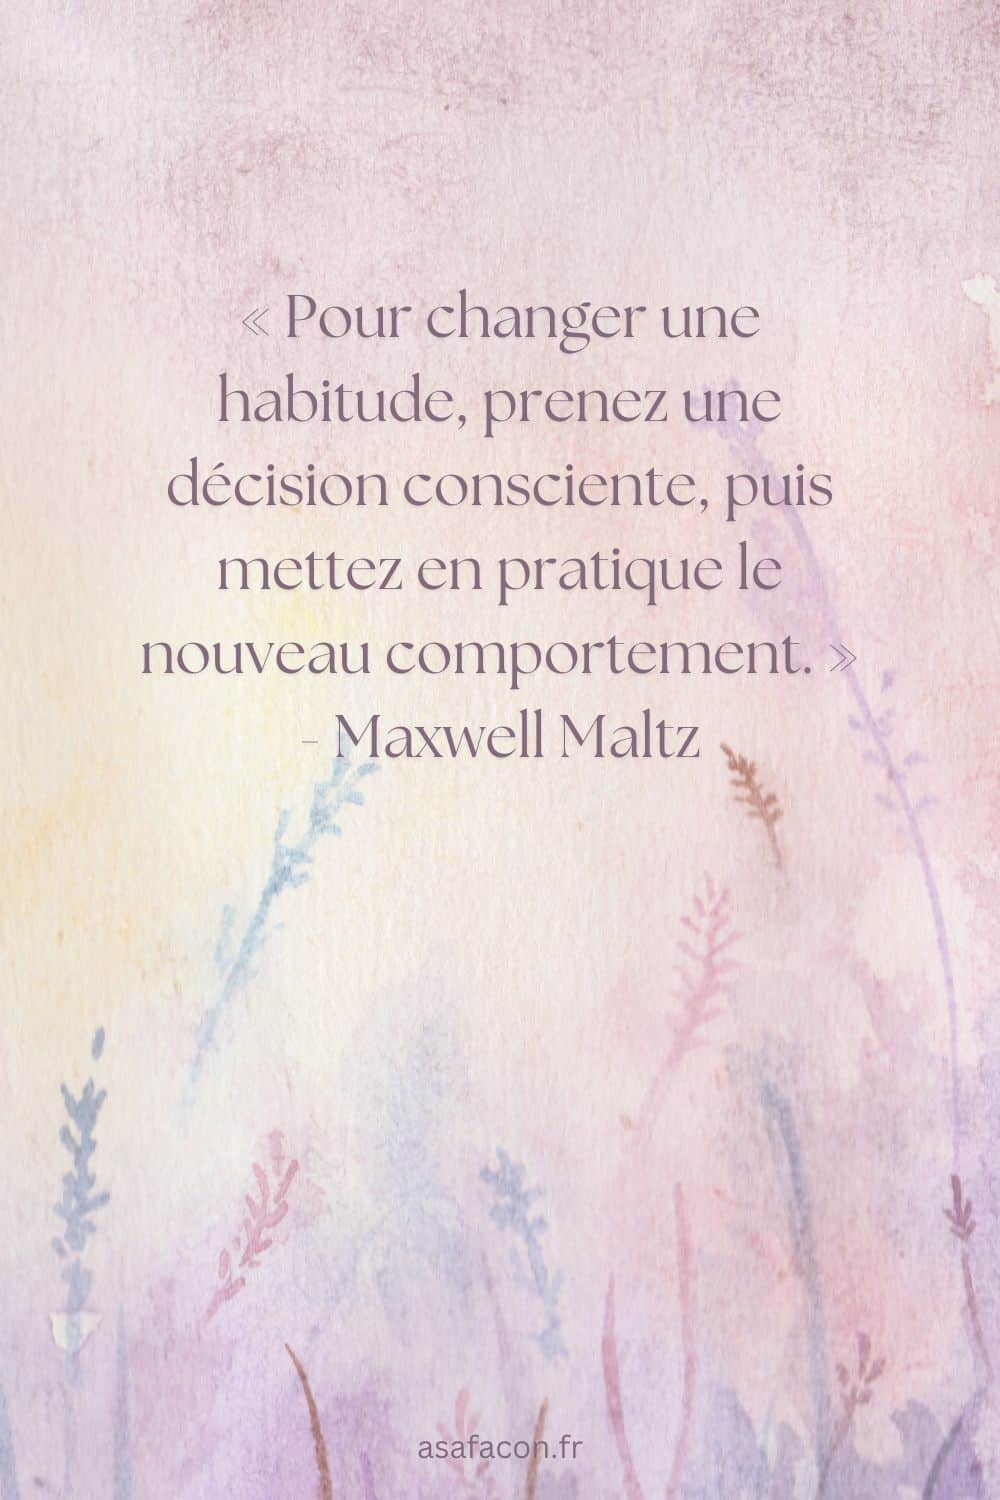 « Pour changer une habitude, prenez une décision consciente, puis mettez en pratique le nouveau comportement. » - Maxwell Maltz